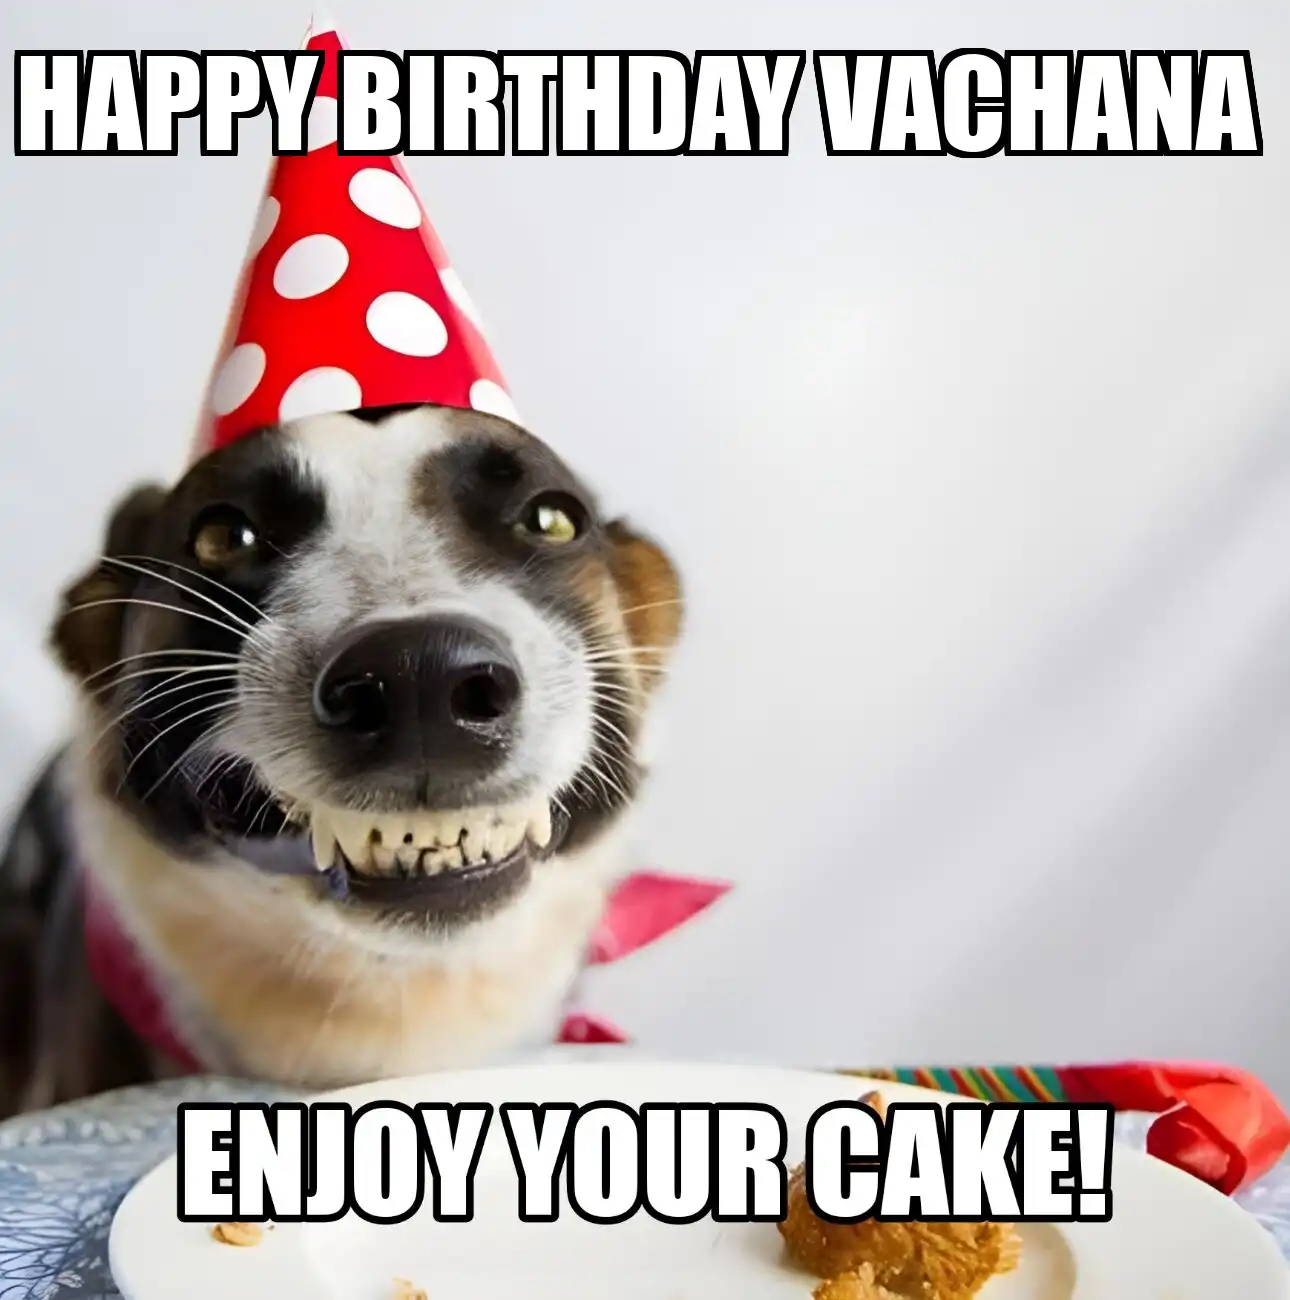 Happy Birthday Vachana Enjoy Your Cake Dog Meme